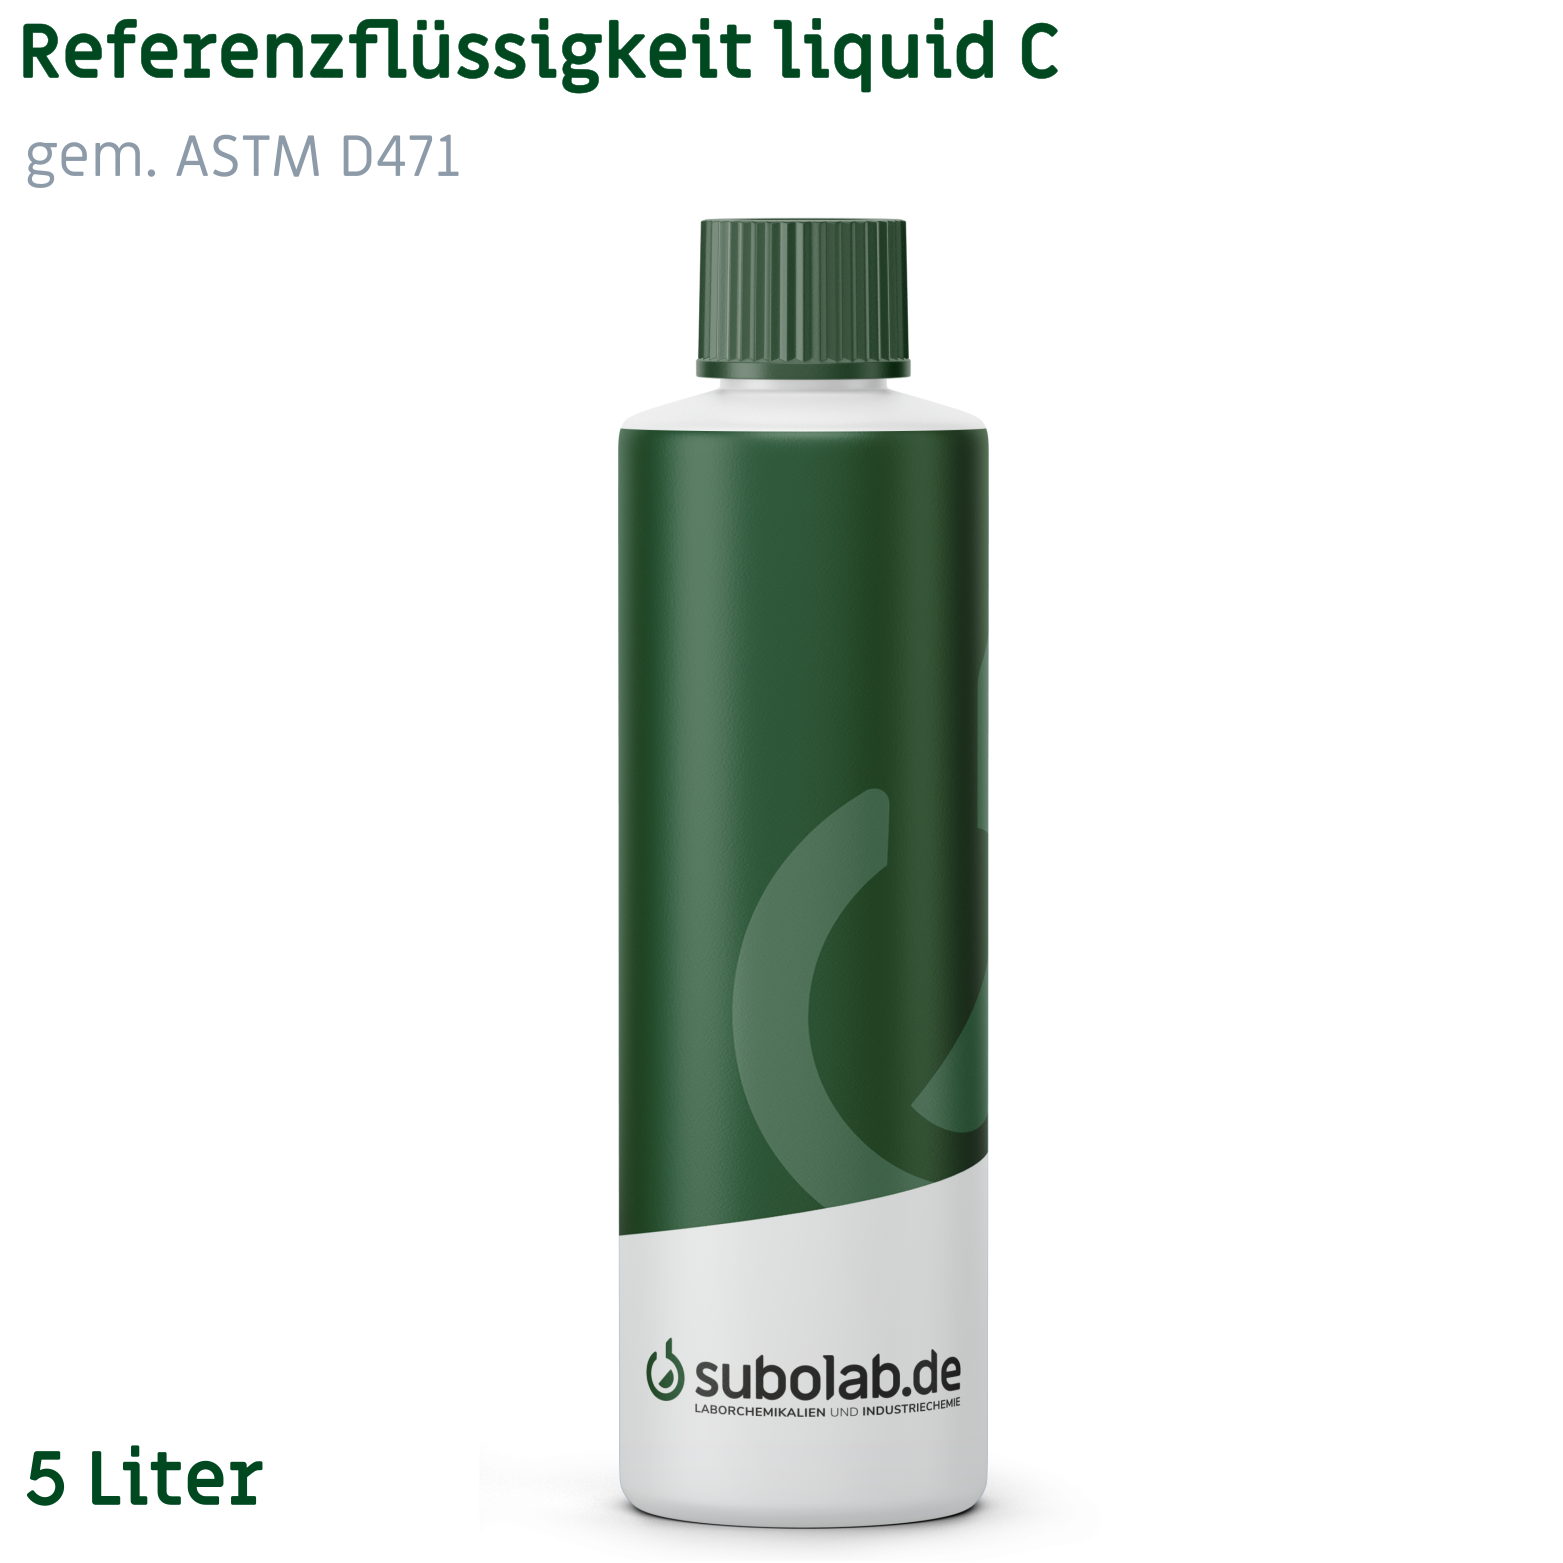 Bild von Referenzflüssigkeit liquid C gem. ASTM D471, gem. ISO 1817:2015 (5 Liter)